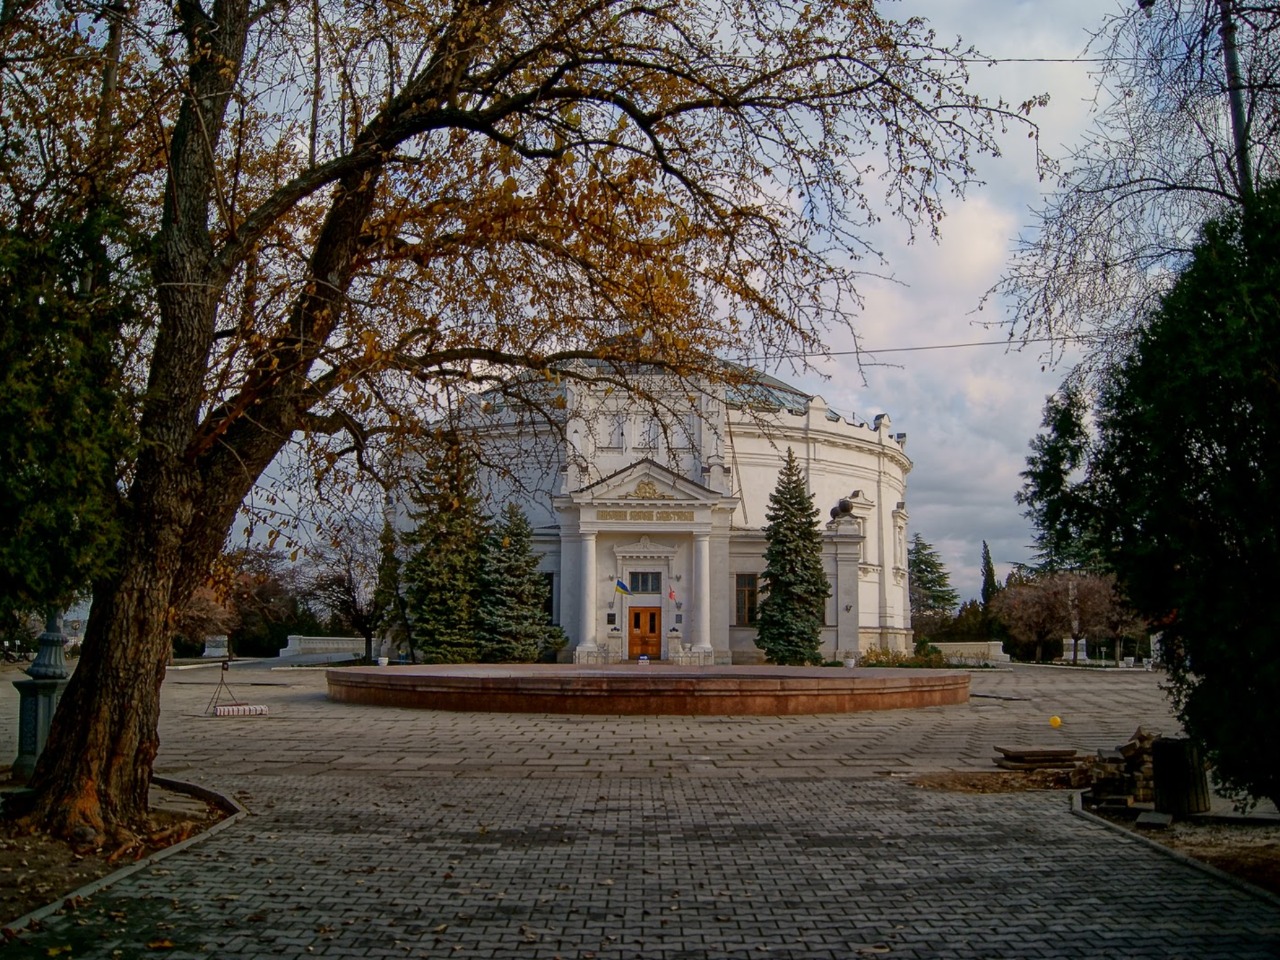 Обзорный тур по Севастополю: город на ладони | Цена 11200₽, отзывы, описание экскурсии